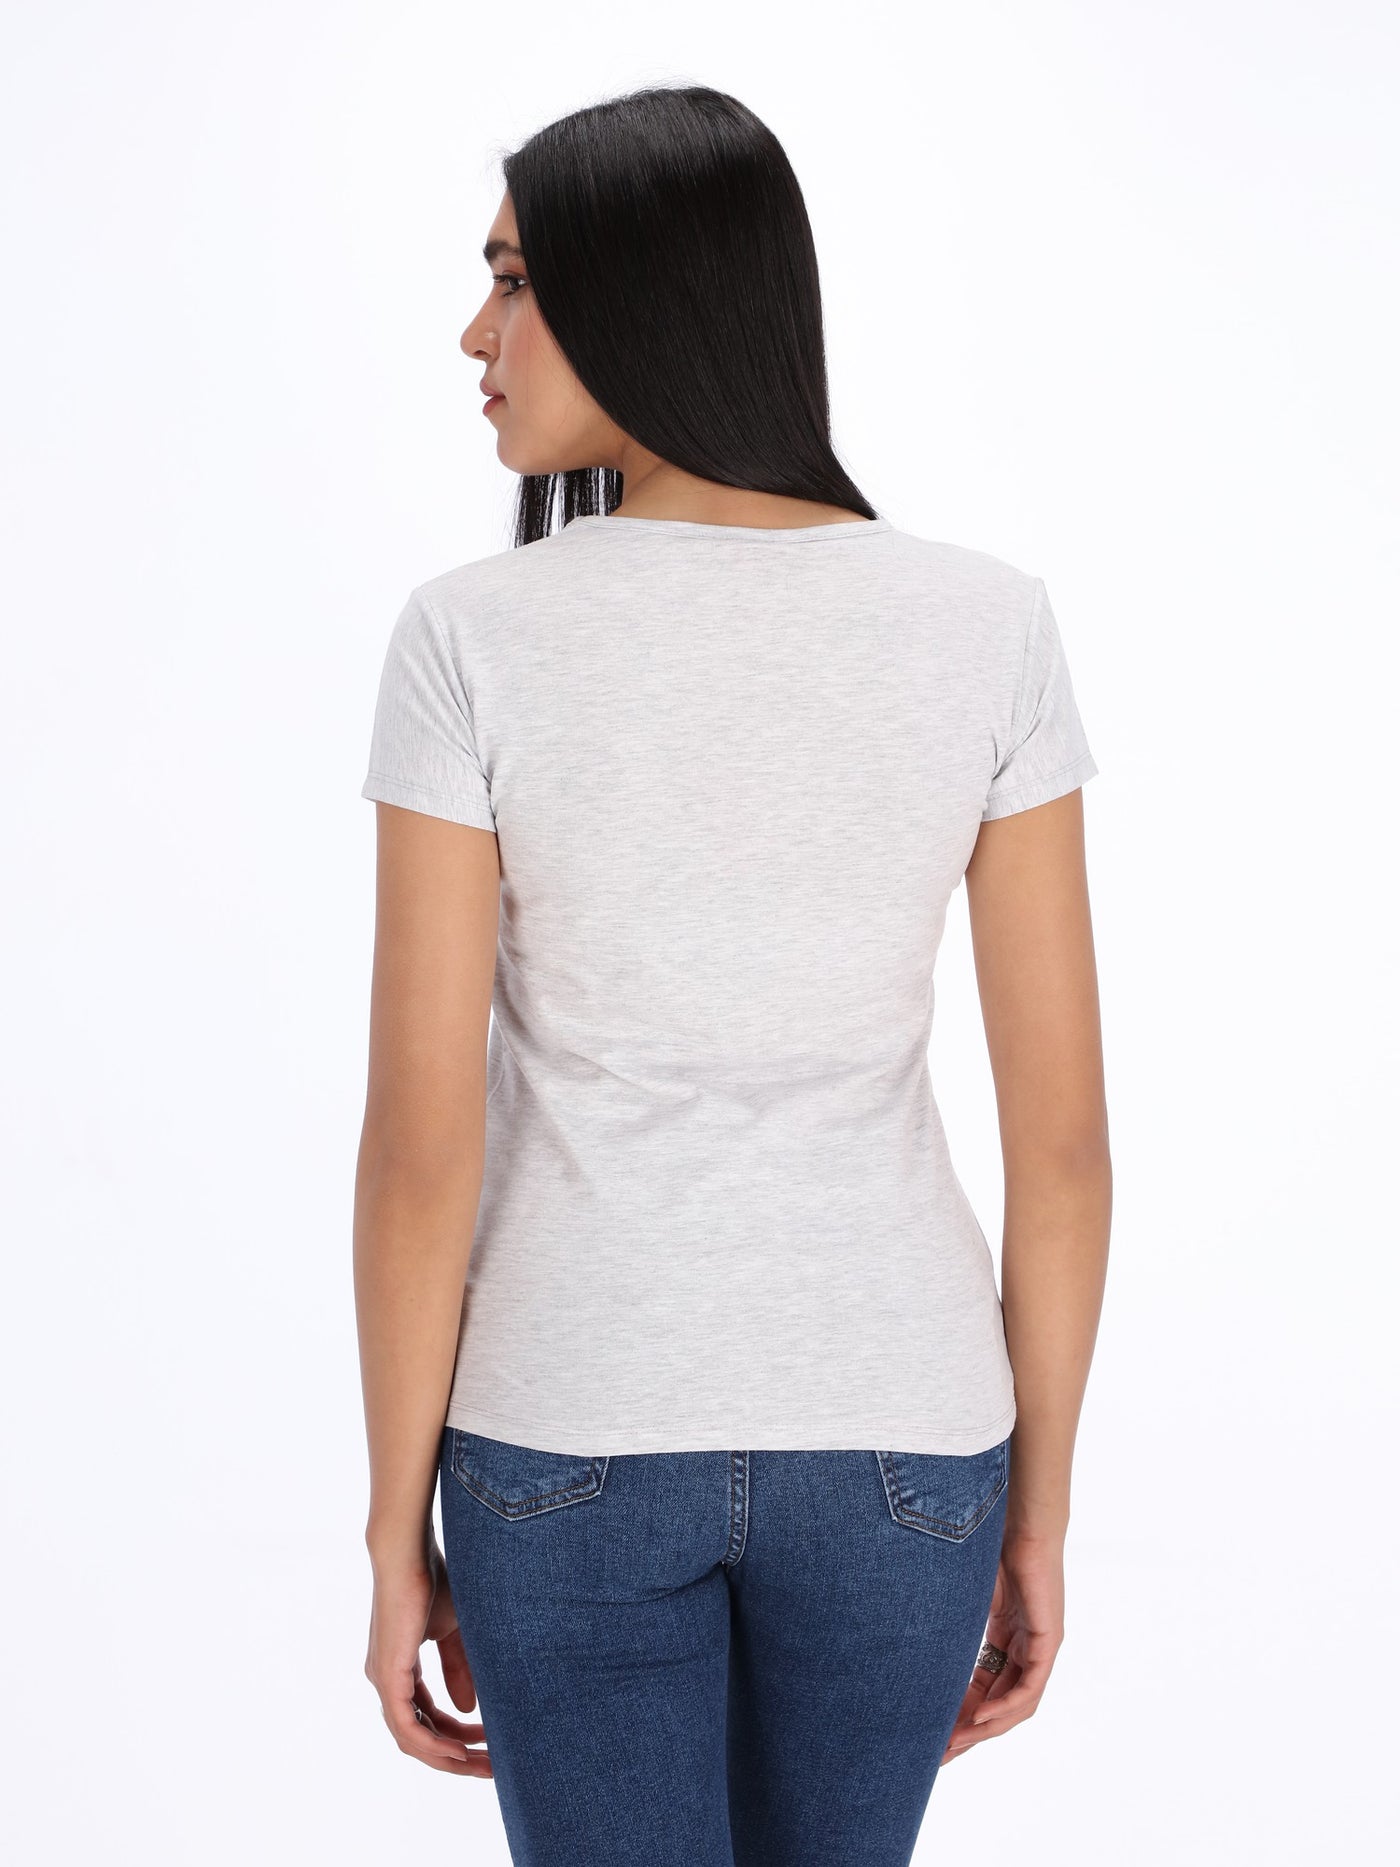 O'Zone Women's Printed T-Shirt